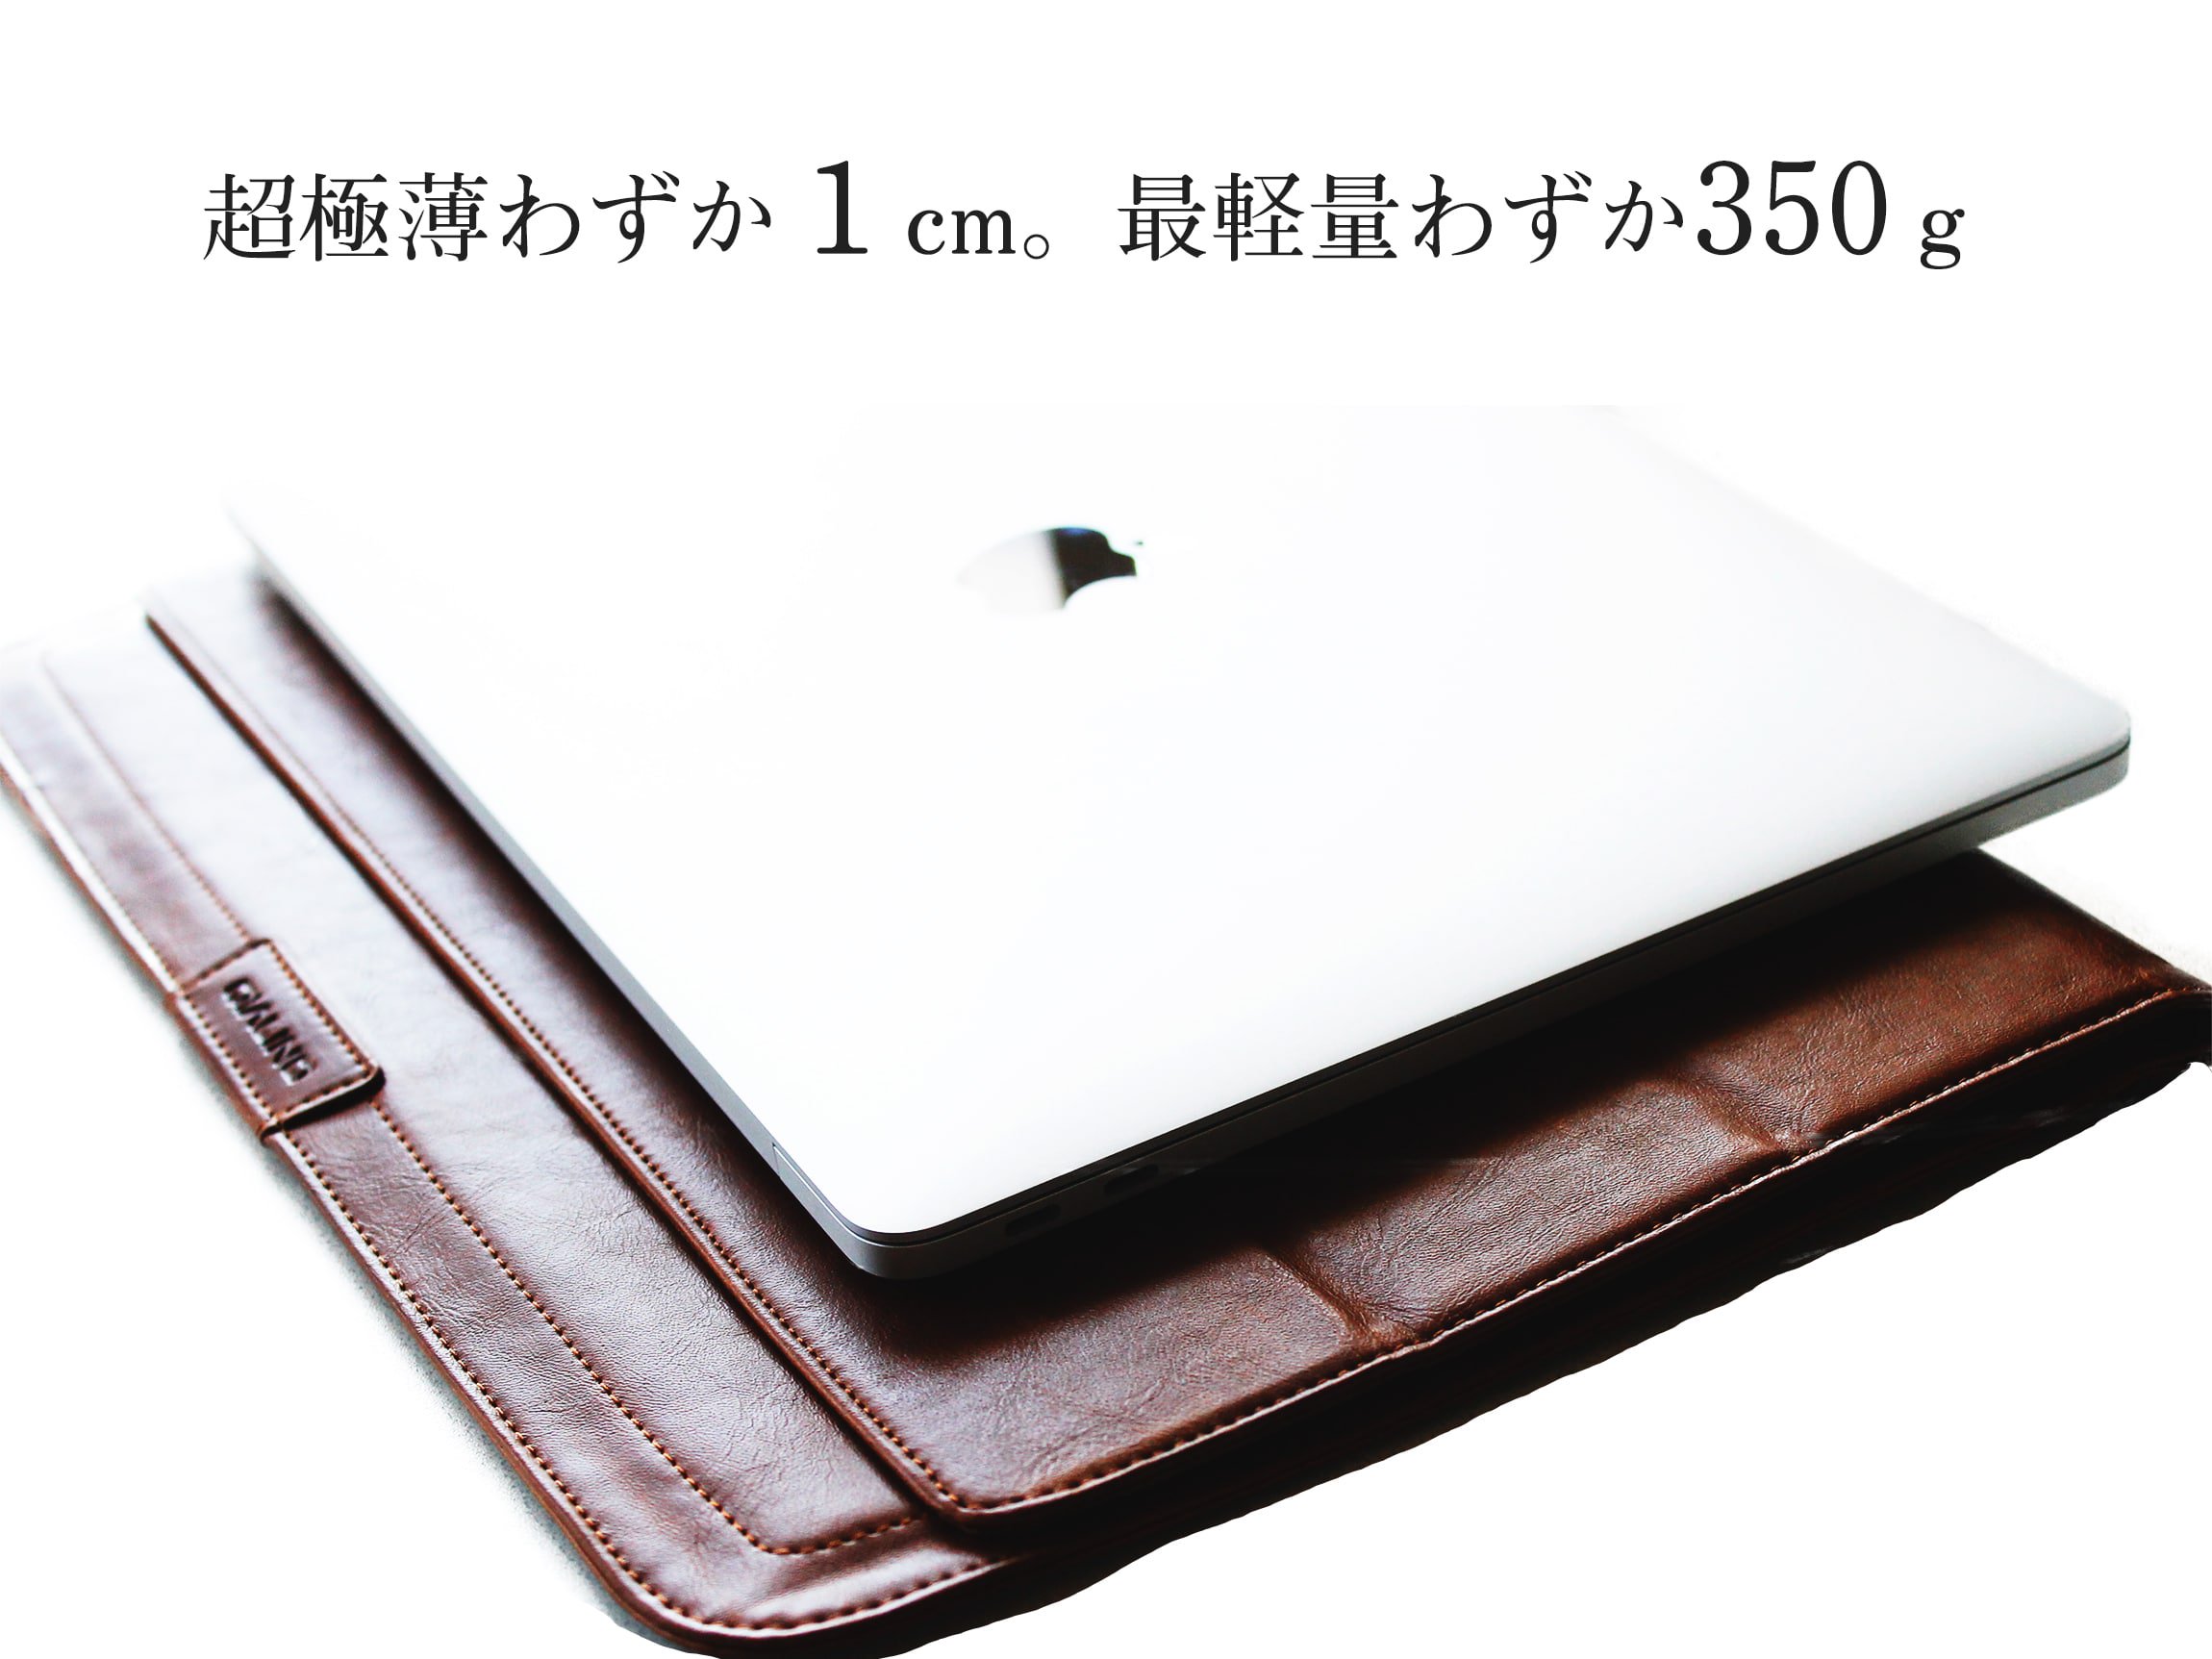 MacBook ケースの薄さは1cm。重さはわずか350グラム